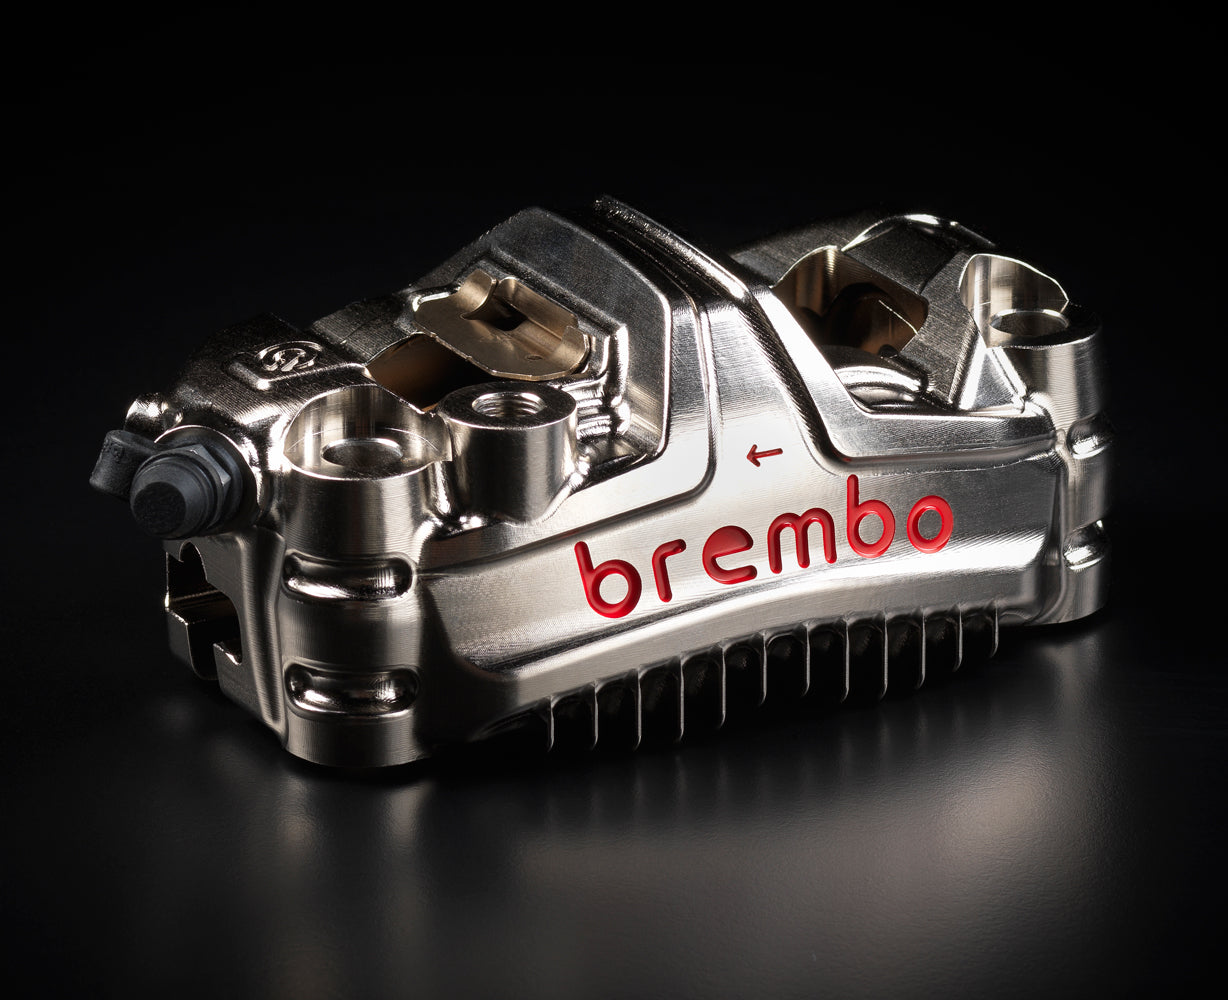 brembo GP4-MS HPラジアル モノブロック CNCキャリパー 左右set ニッケルコート 108mmピッチ 220.D600.30 ブレンボ レーシング 220D60030